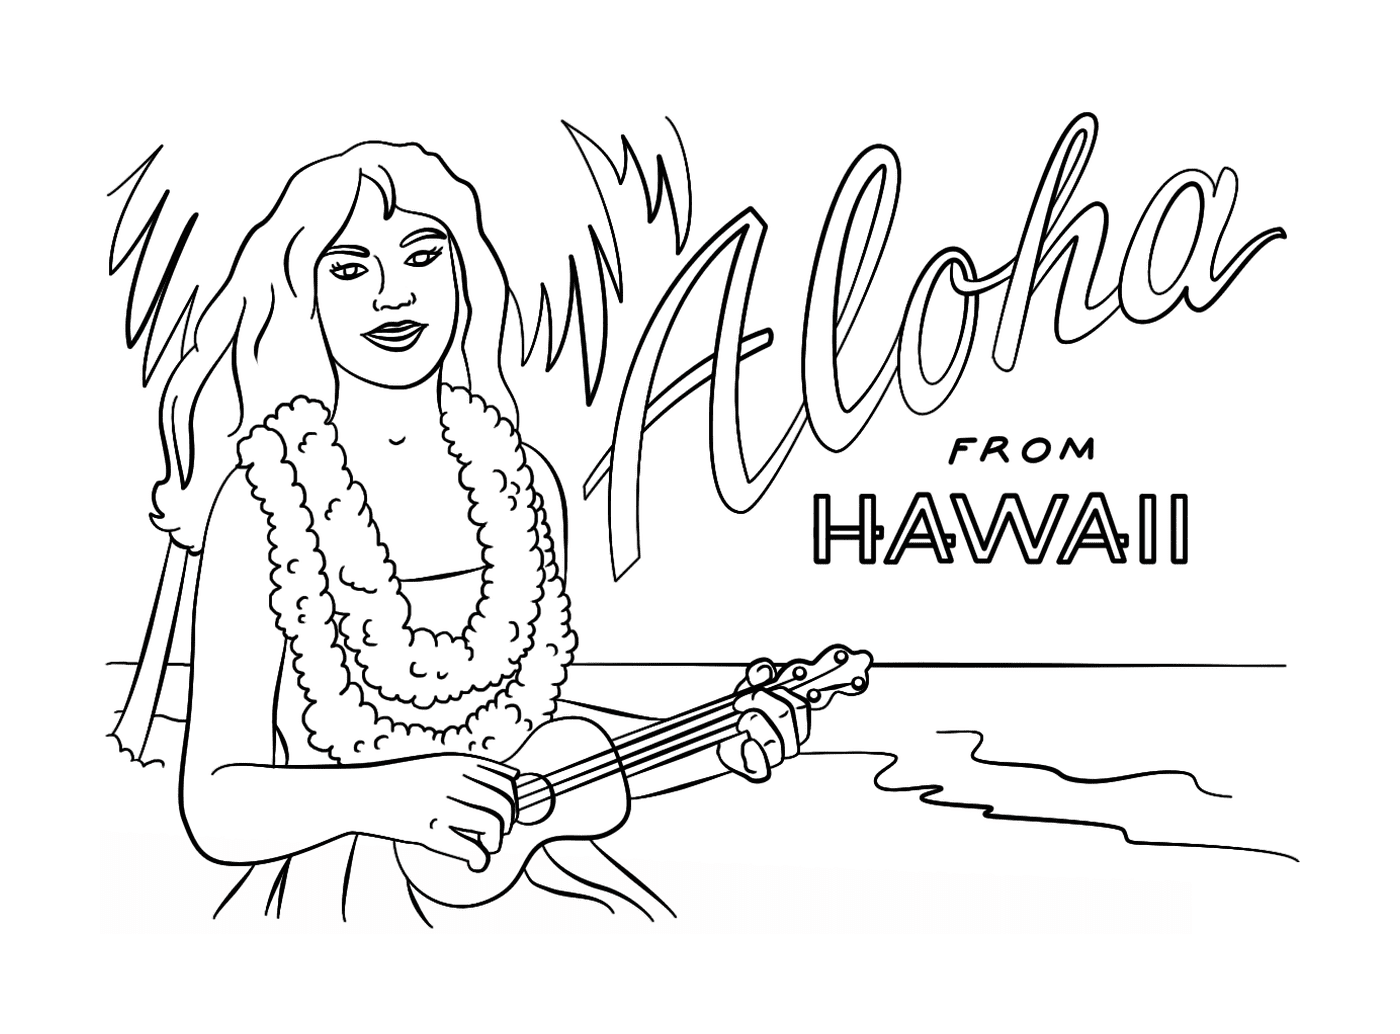  Una chica hawaiana con un ukelele bailando durante las vacaciones de verano 